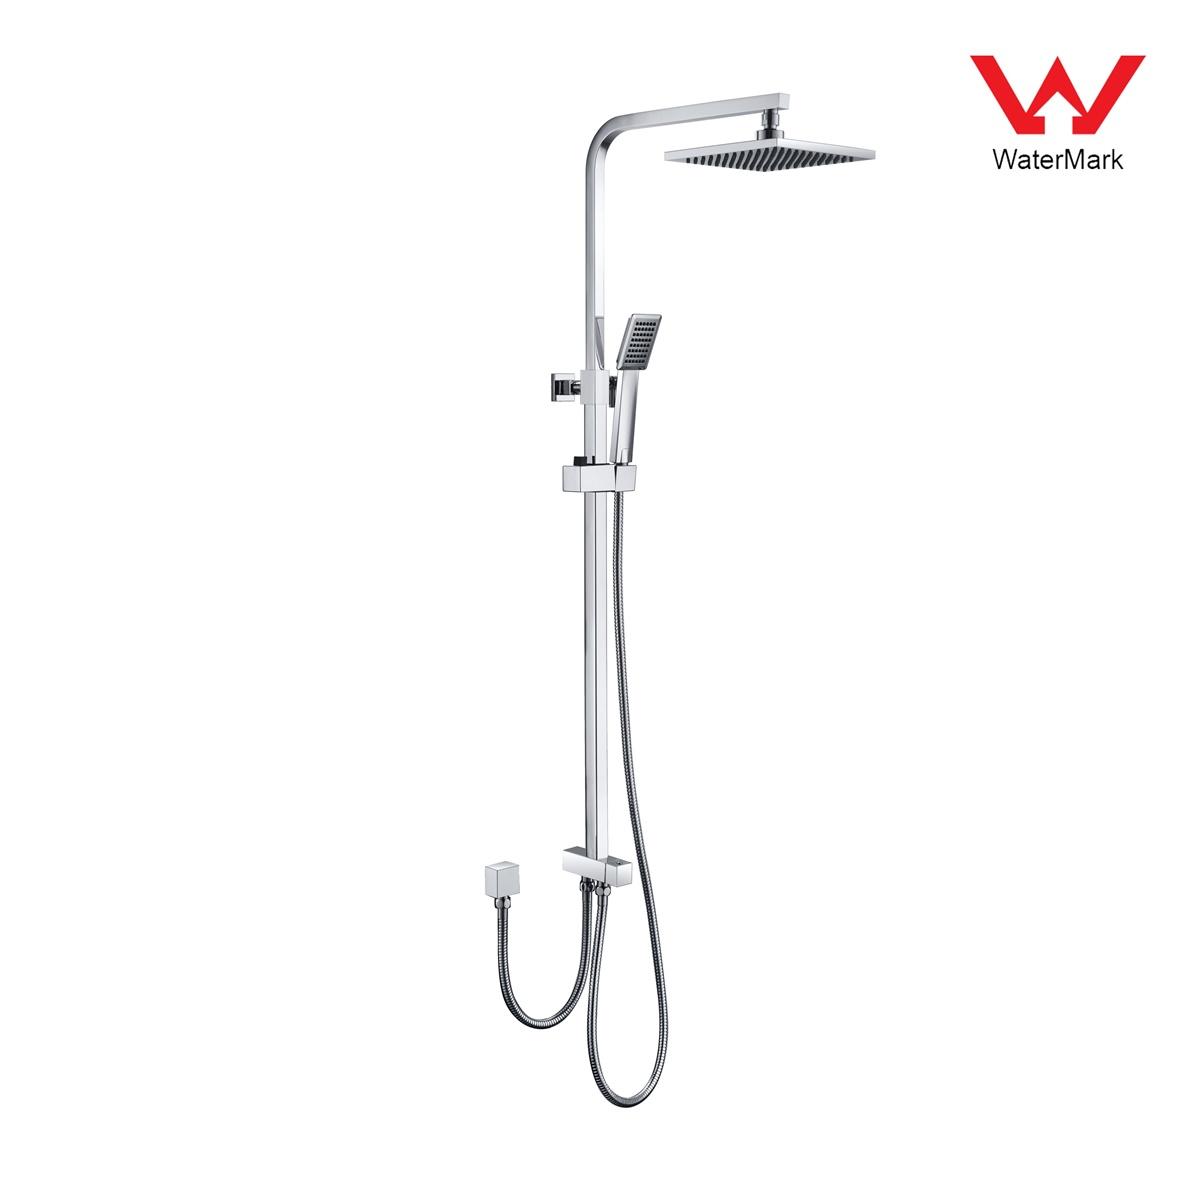 DA610023CP Watermark minősítésű zuhanykészletek, esőzuhany készlet, tolózuhany készlet;